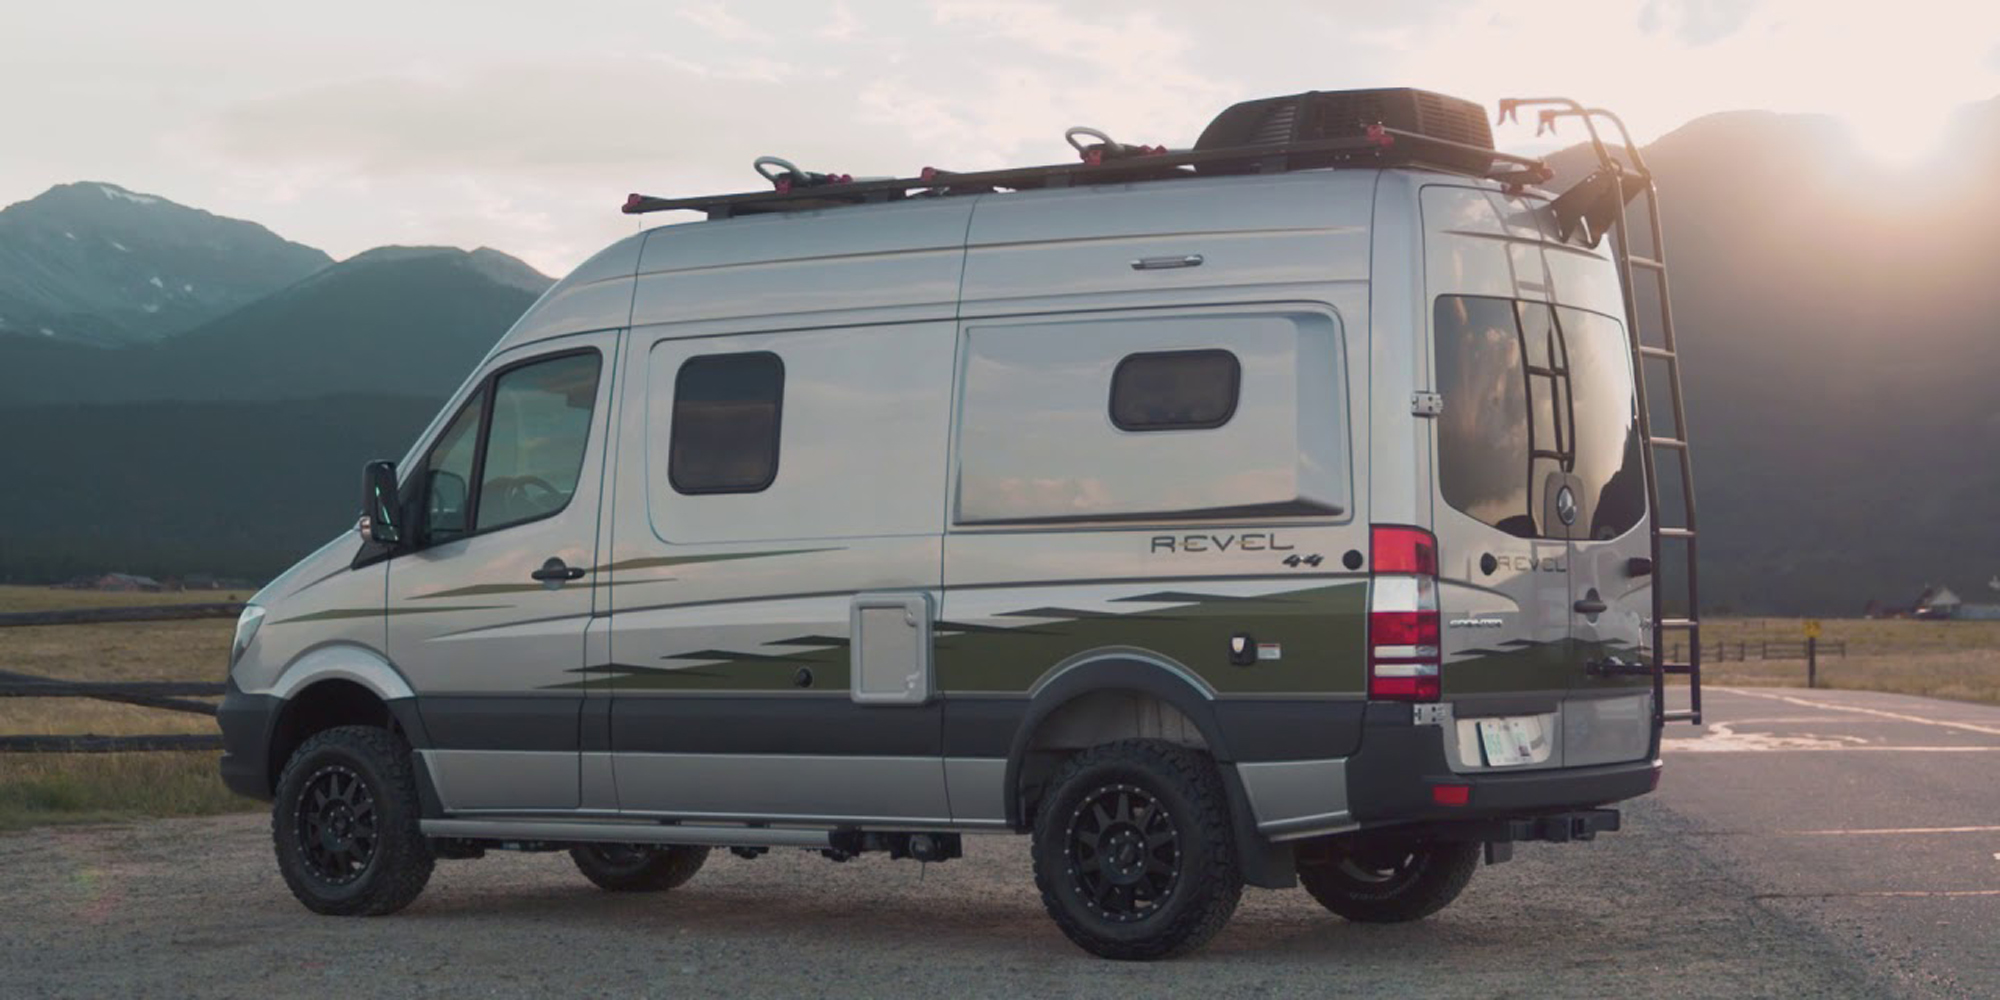 Winnebago S Mercedes Benz Revel 4x4 Camper Van Is Built For